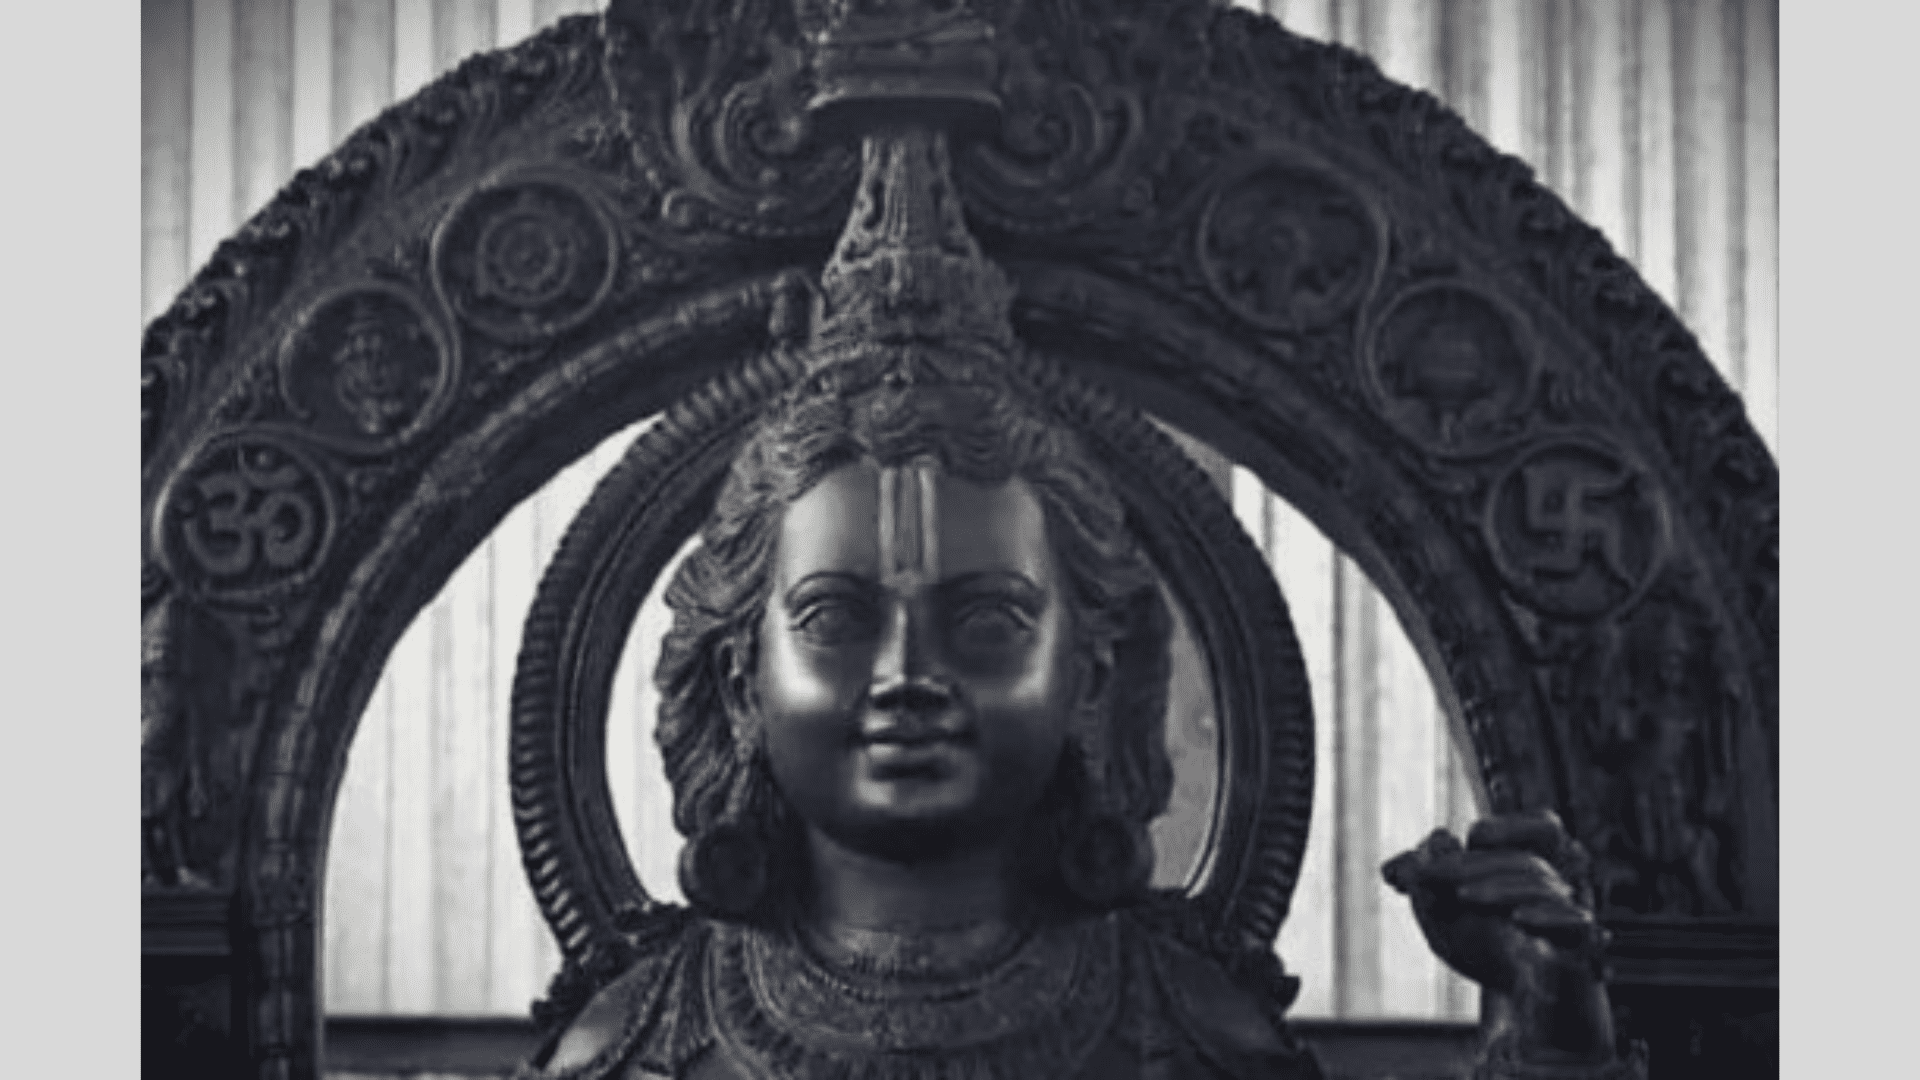 भगवान श्री राम की प्राण प्रतिष्ठा की तैयारी: राम मंदिर के गर्भगृह में स्थापित होने वाली मूर्ति की सच्चाई सामने आई